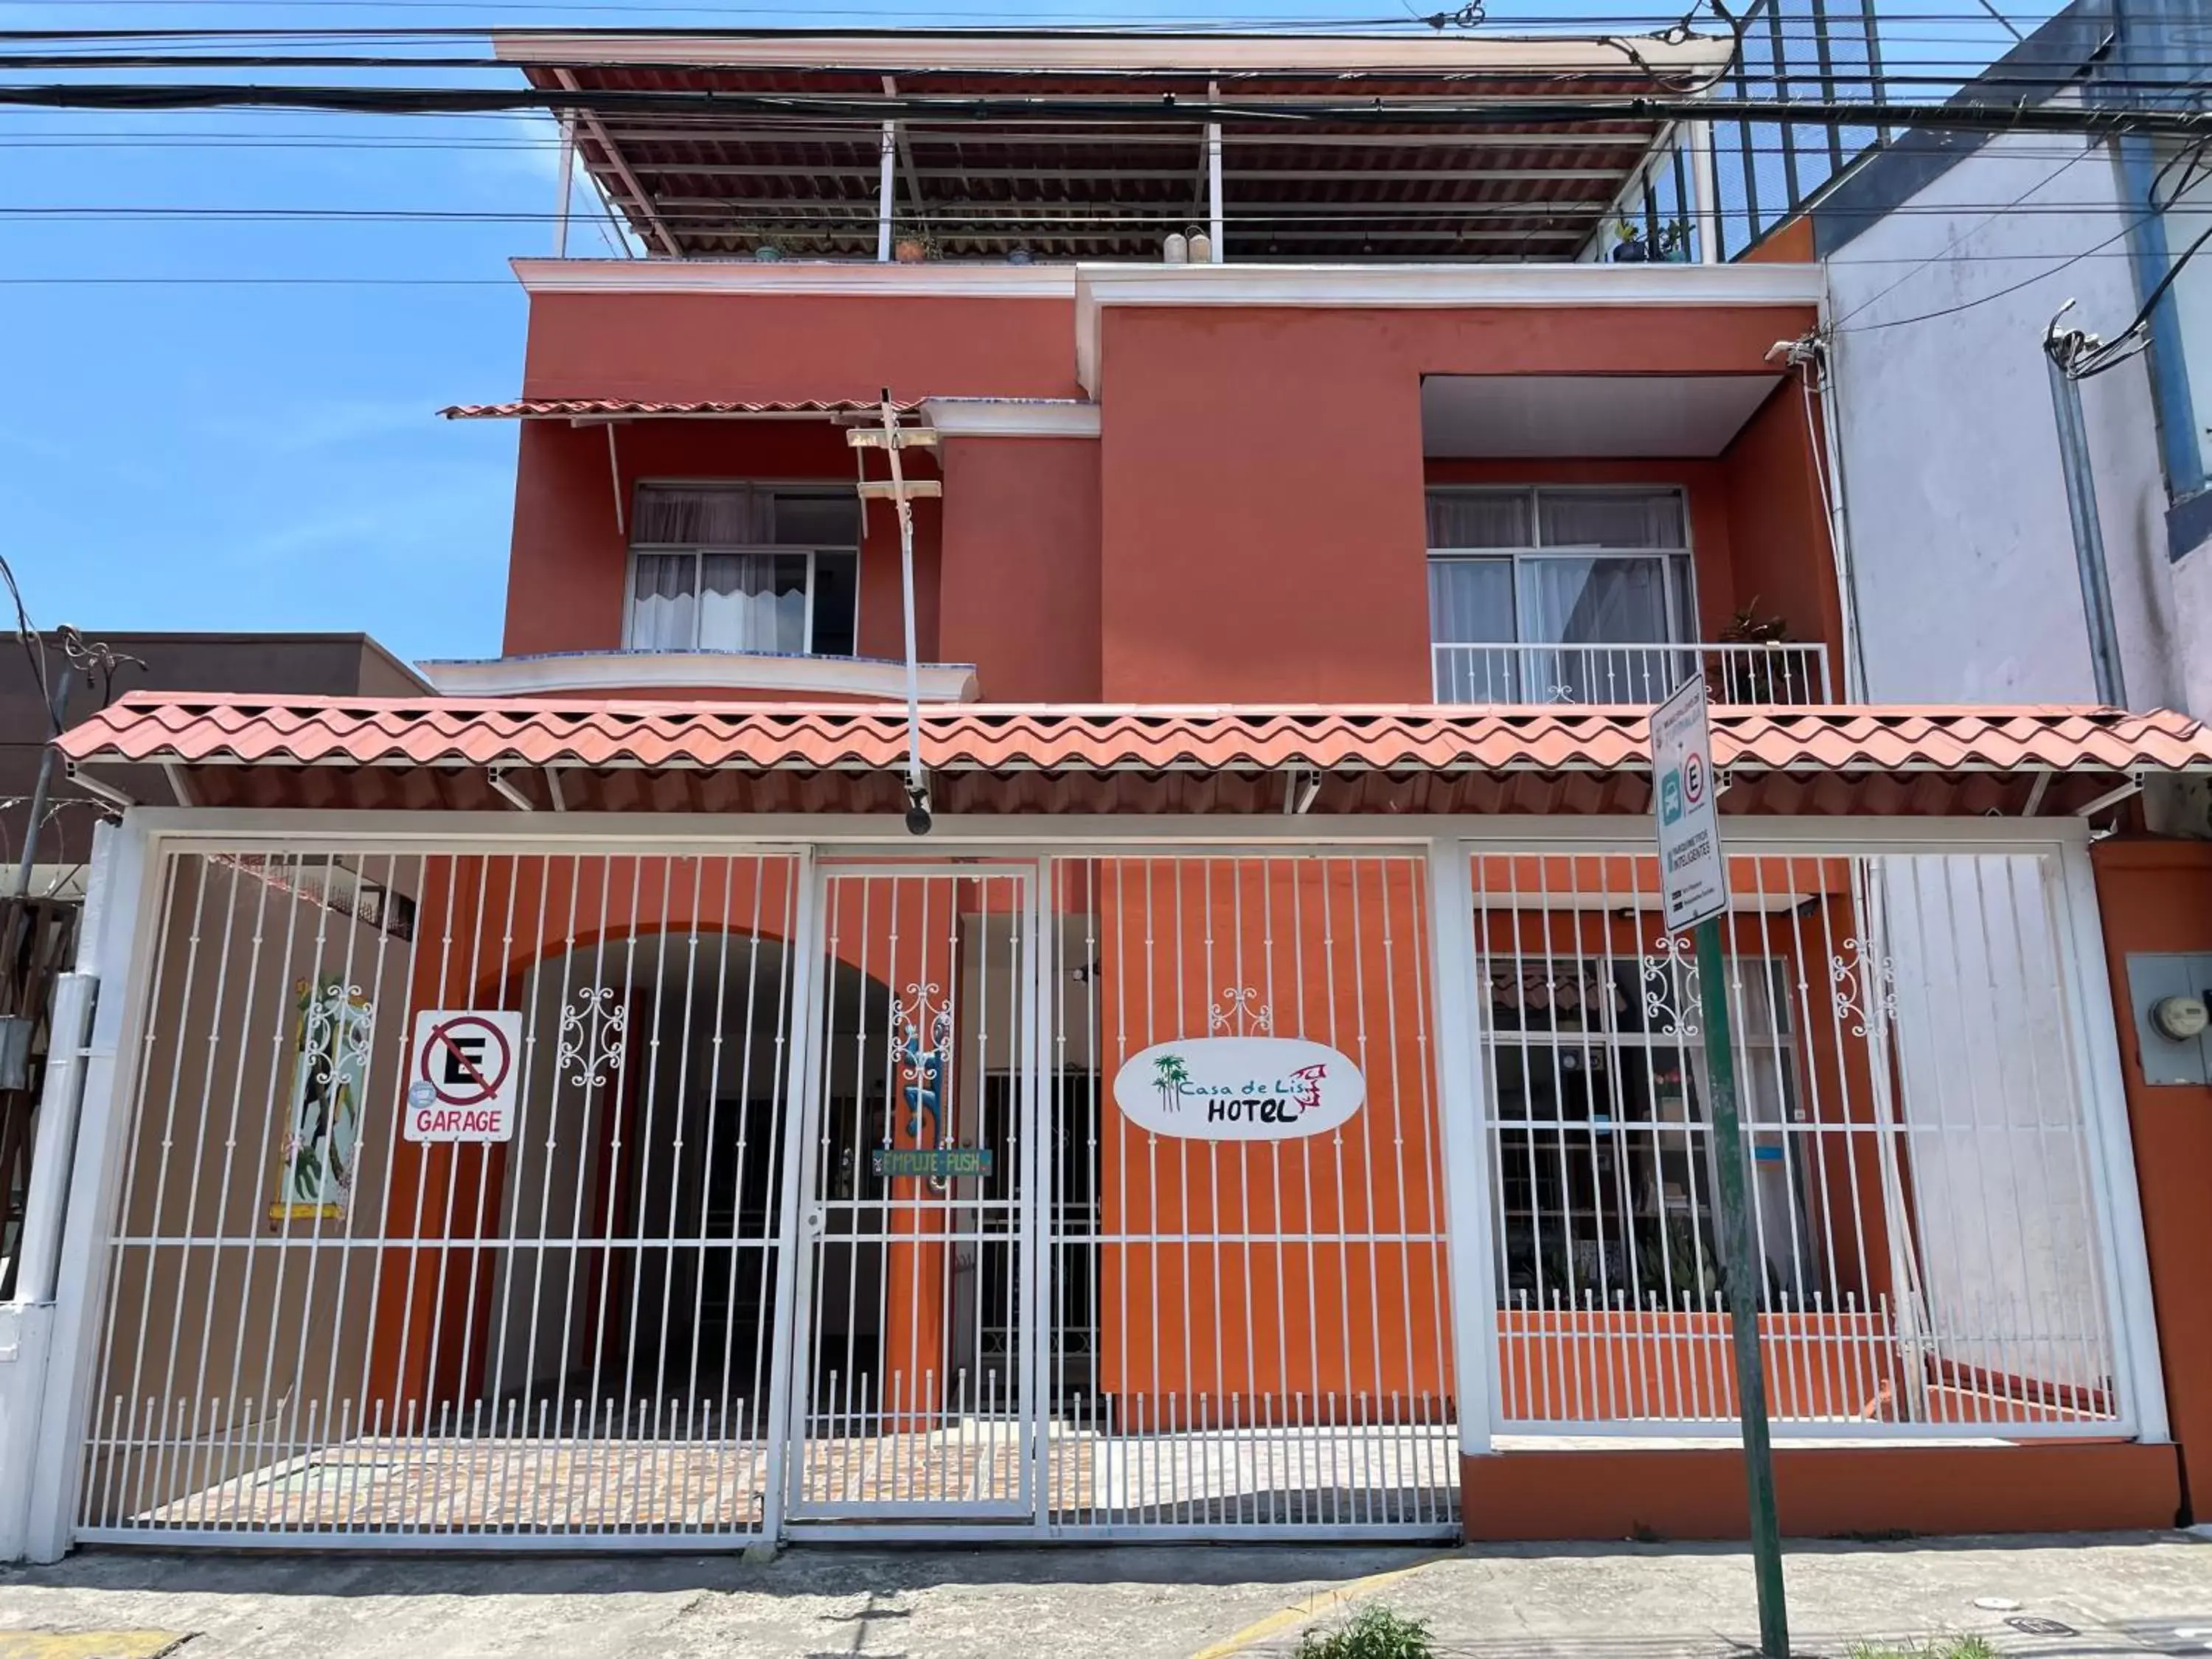 Property Building in Casa de Lis Hotel & Tourist Info Centre